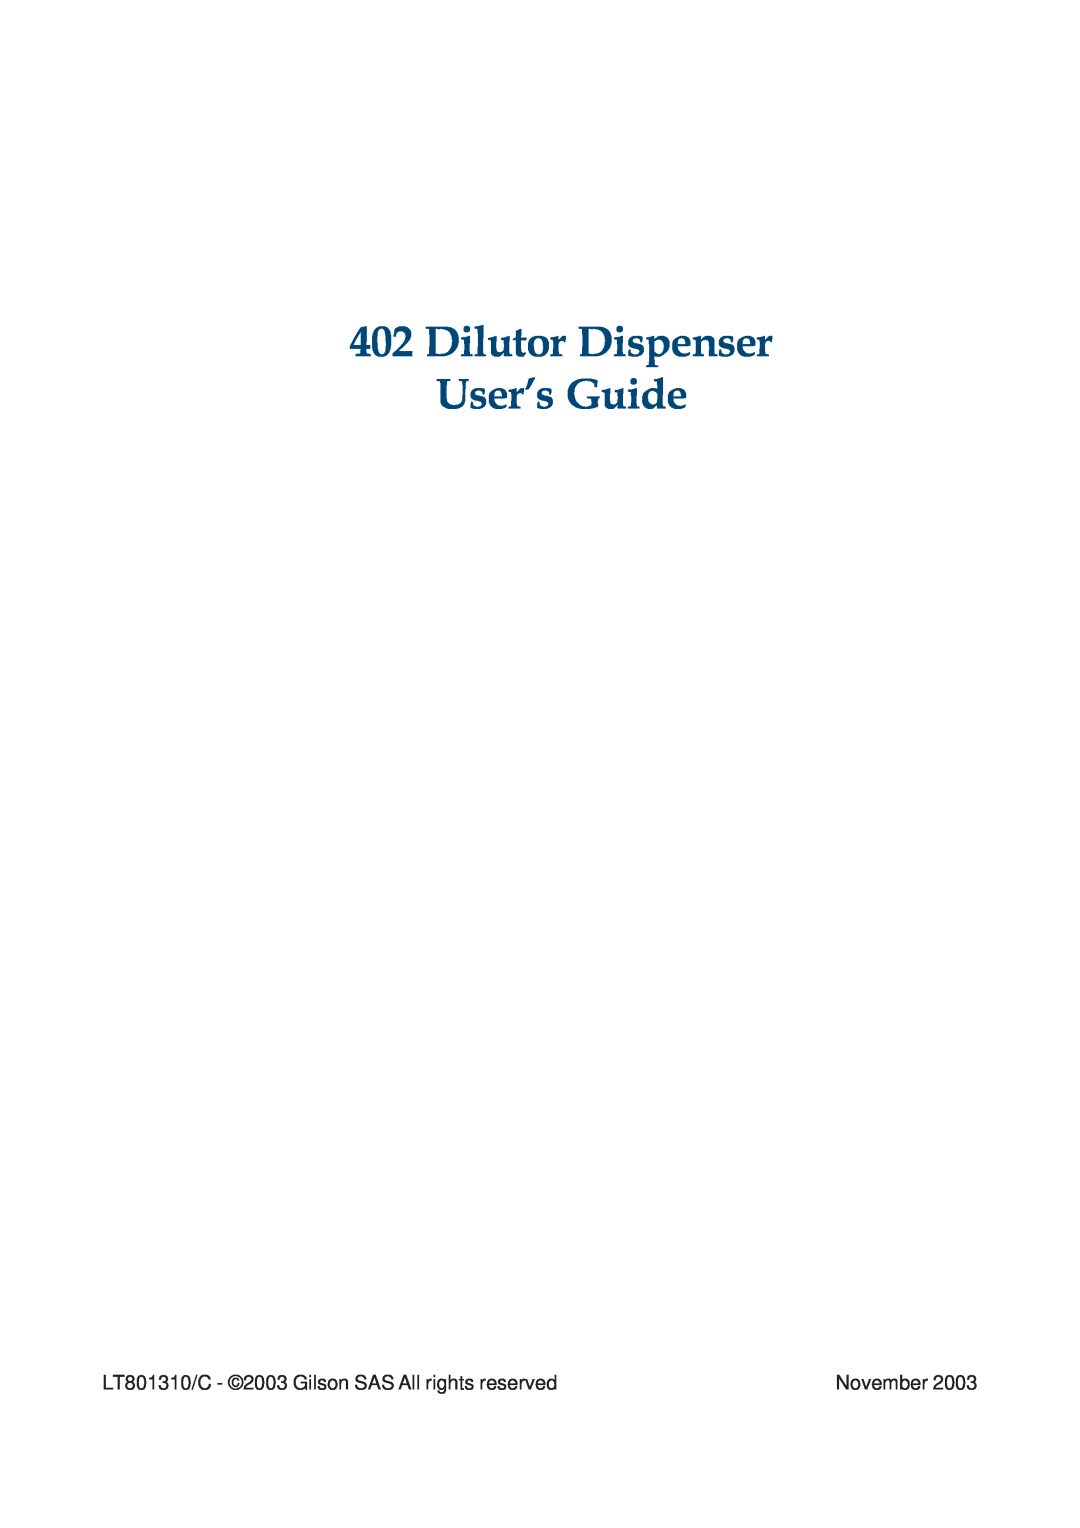 Gilson 402 manual Dilutor Dispenser User’s Guide, LT801310/C - 2003 Gilson SAS All rights reserved, November 